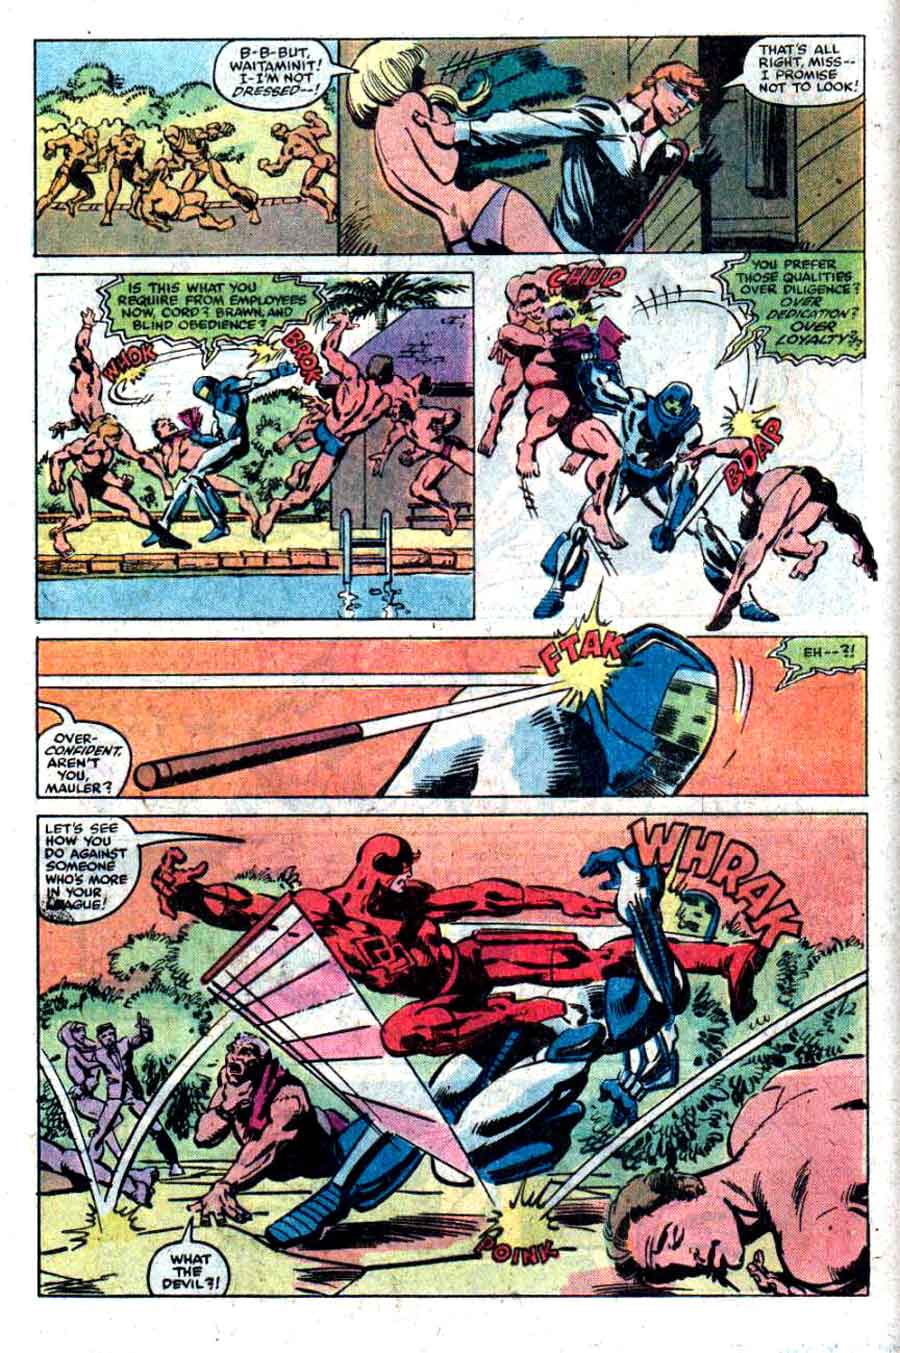 Daredevil v1 #167 marvel comic book page art by Frank Miller